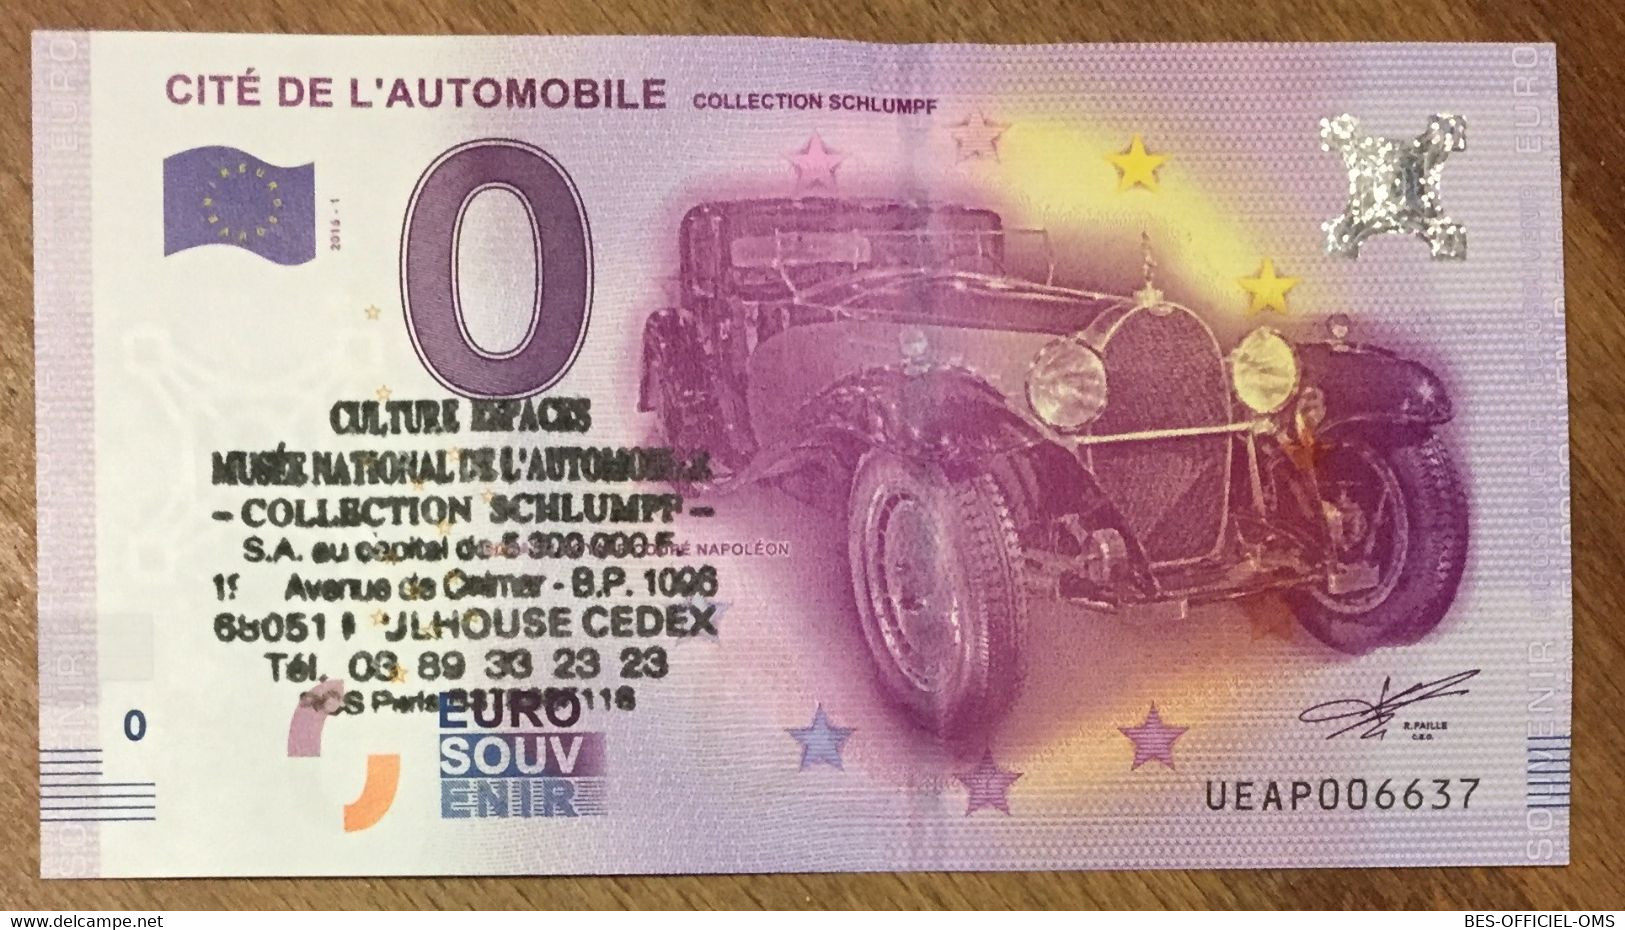 2016 BILLET 0 EURO SOUVENIR DPT 68 CITÉ DE L'AUTOMOBILE + TAMPON ZERO 0 EURO SCHEIN BANKNOTE PAPER MONEY - Private Proofs / Unofficial